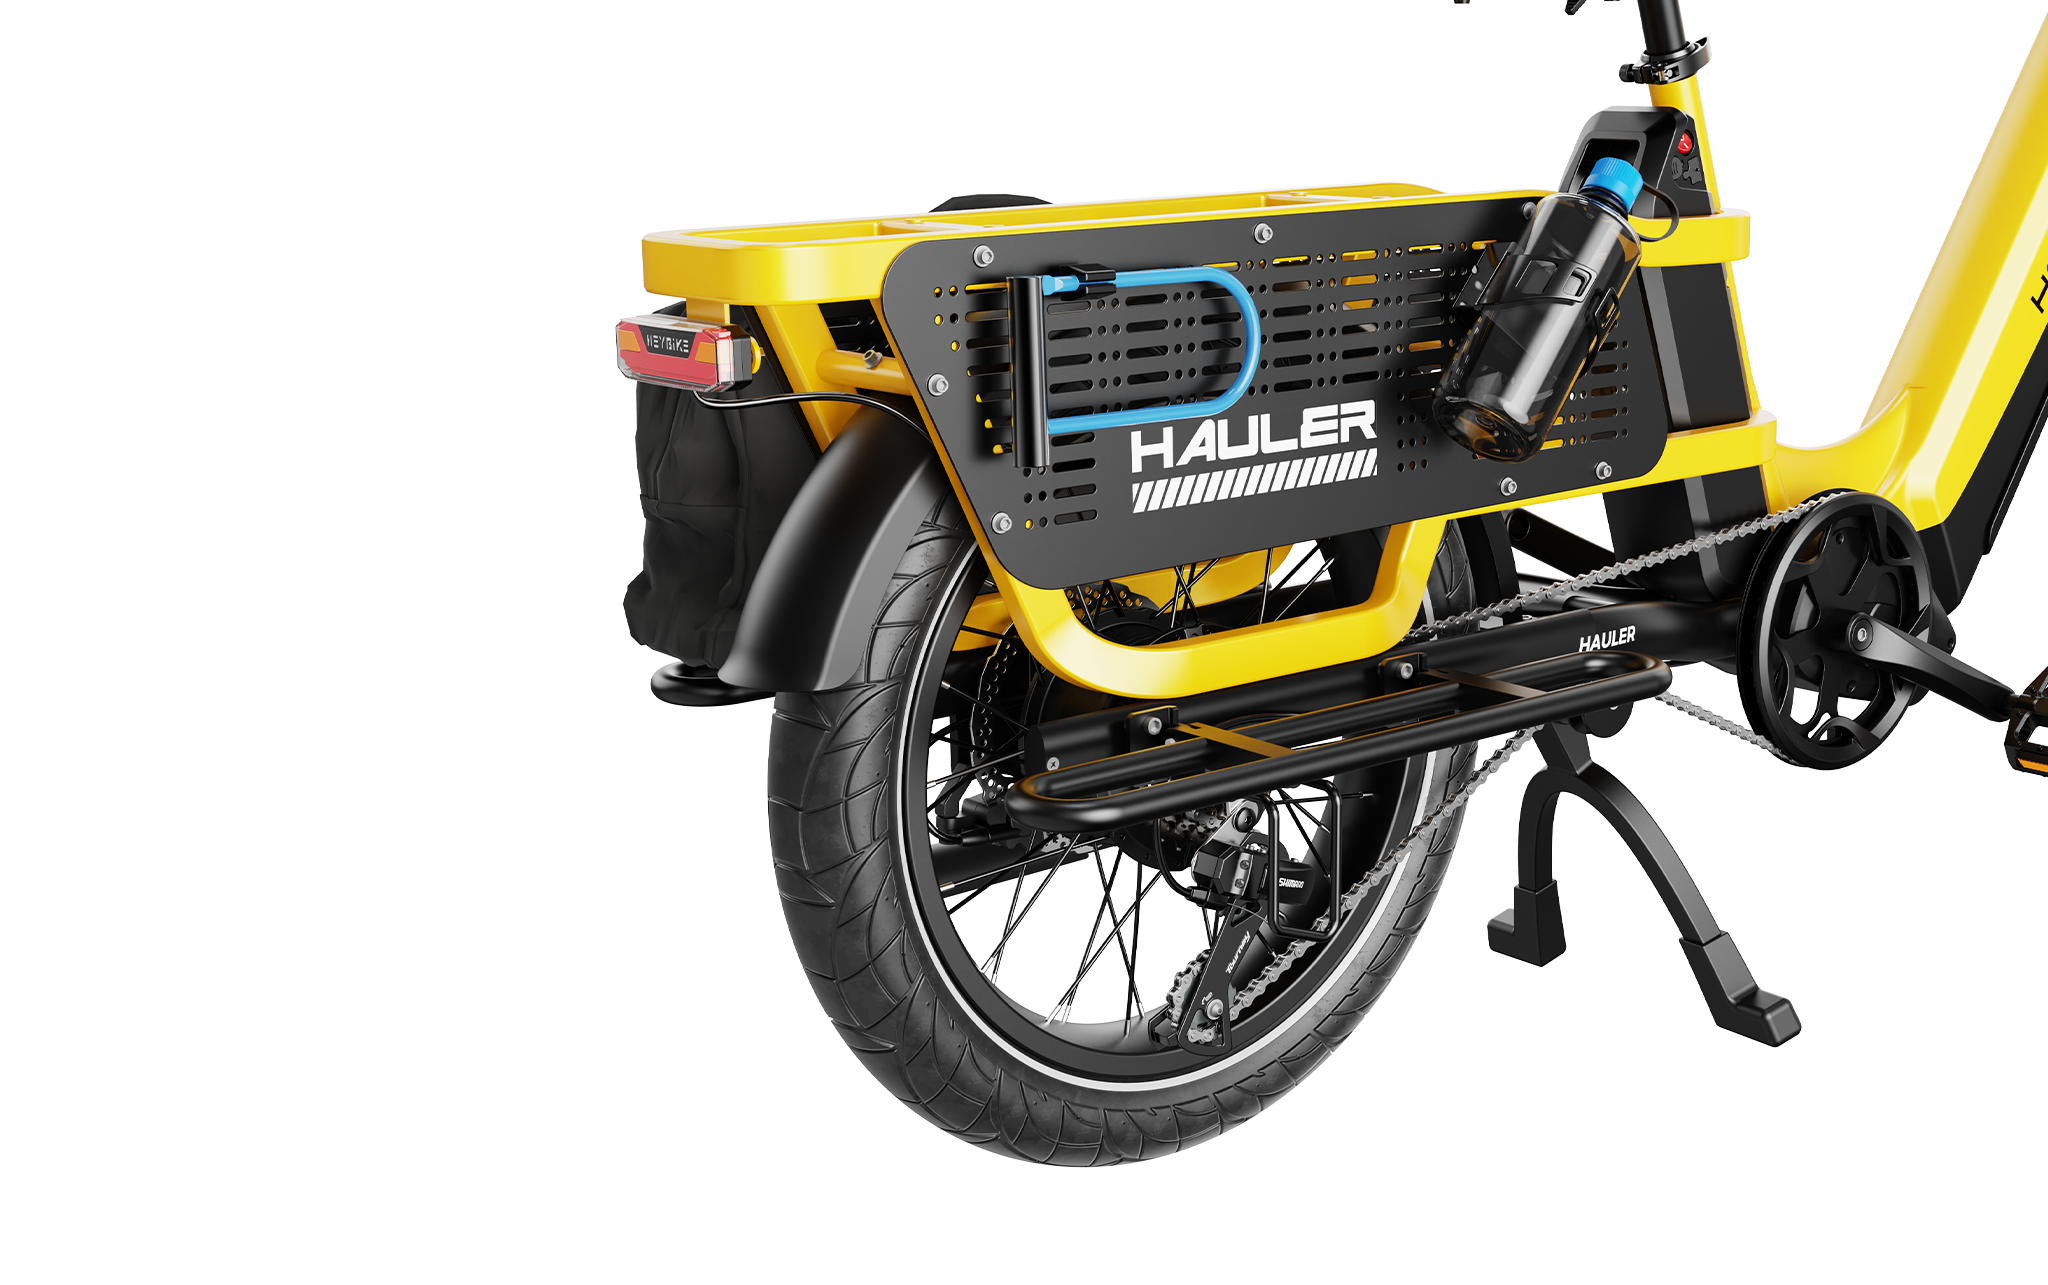 Hauler -  Payload Capacity